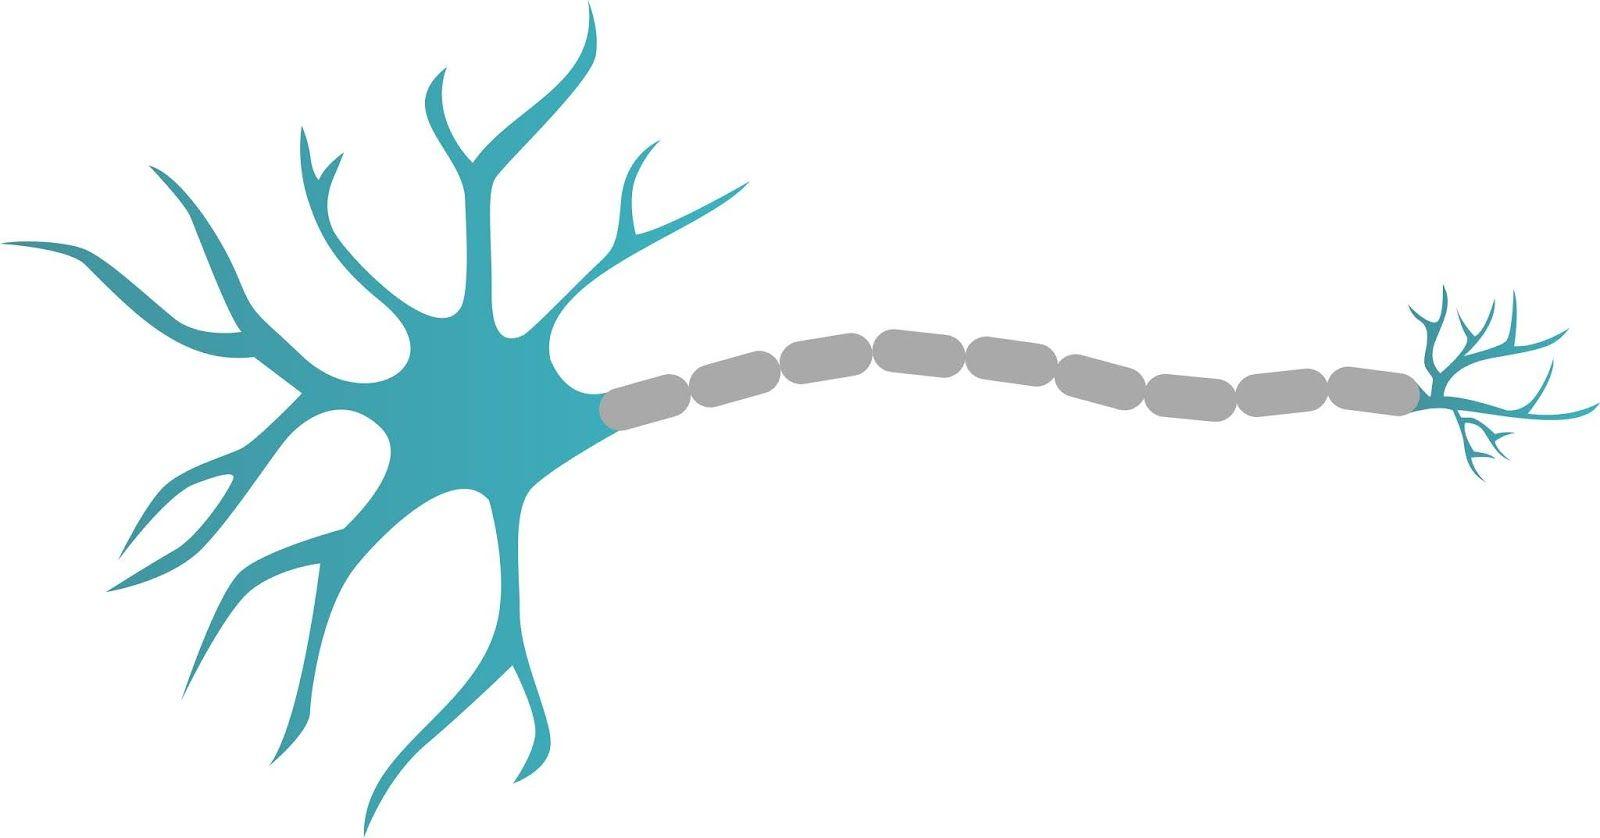 Neuron Logo - Neuron png logo, Neuron png design, Neuron Design, Neuron logo